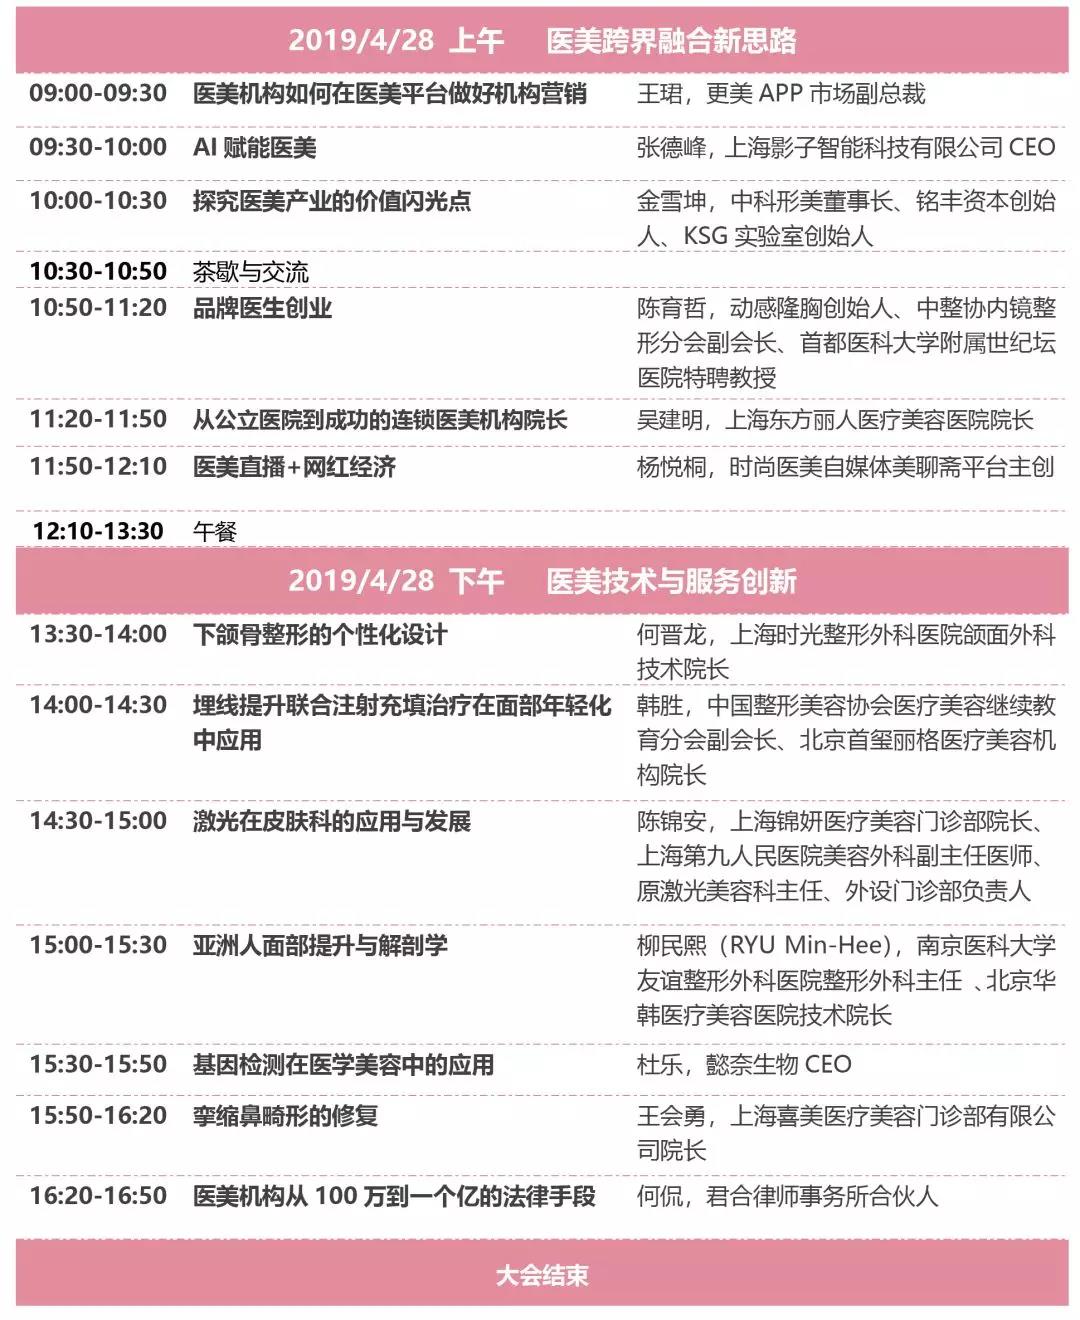 2019第二届国际医美产业创新论坛（上海）